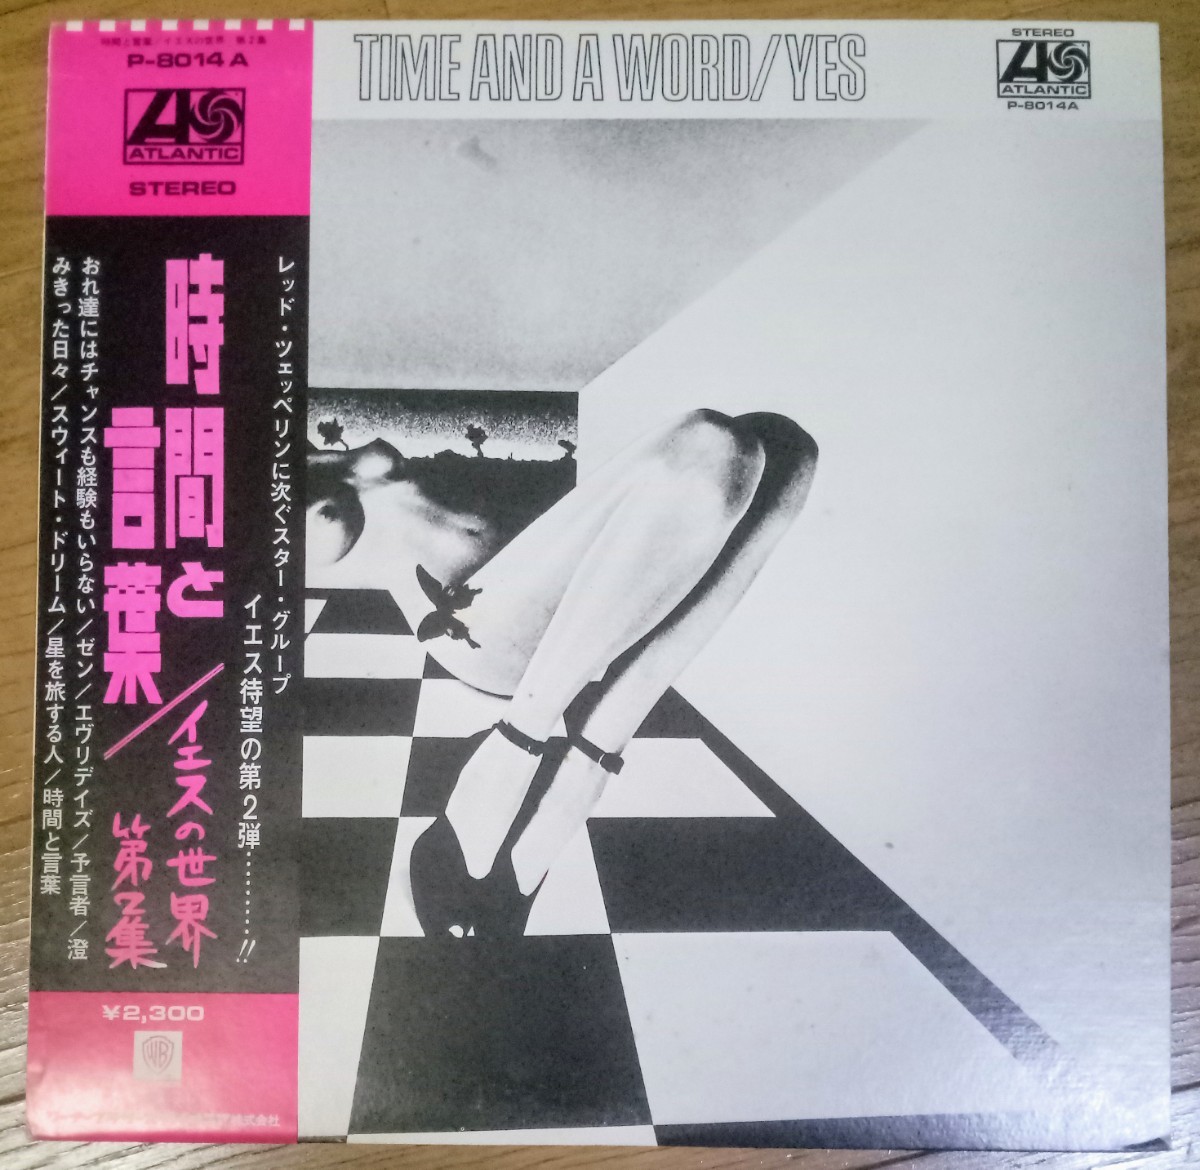 貴重盤・帯付・補充票付 / イエス / 時間と言葉 (JAPAN 日本盤 Vinyl LP レコード) OBI / YES / P-8014A_画像1